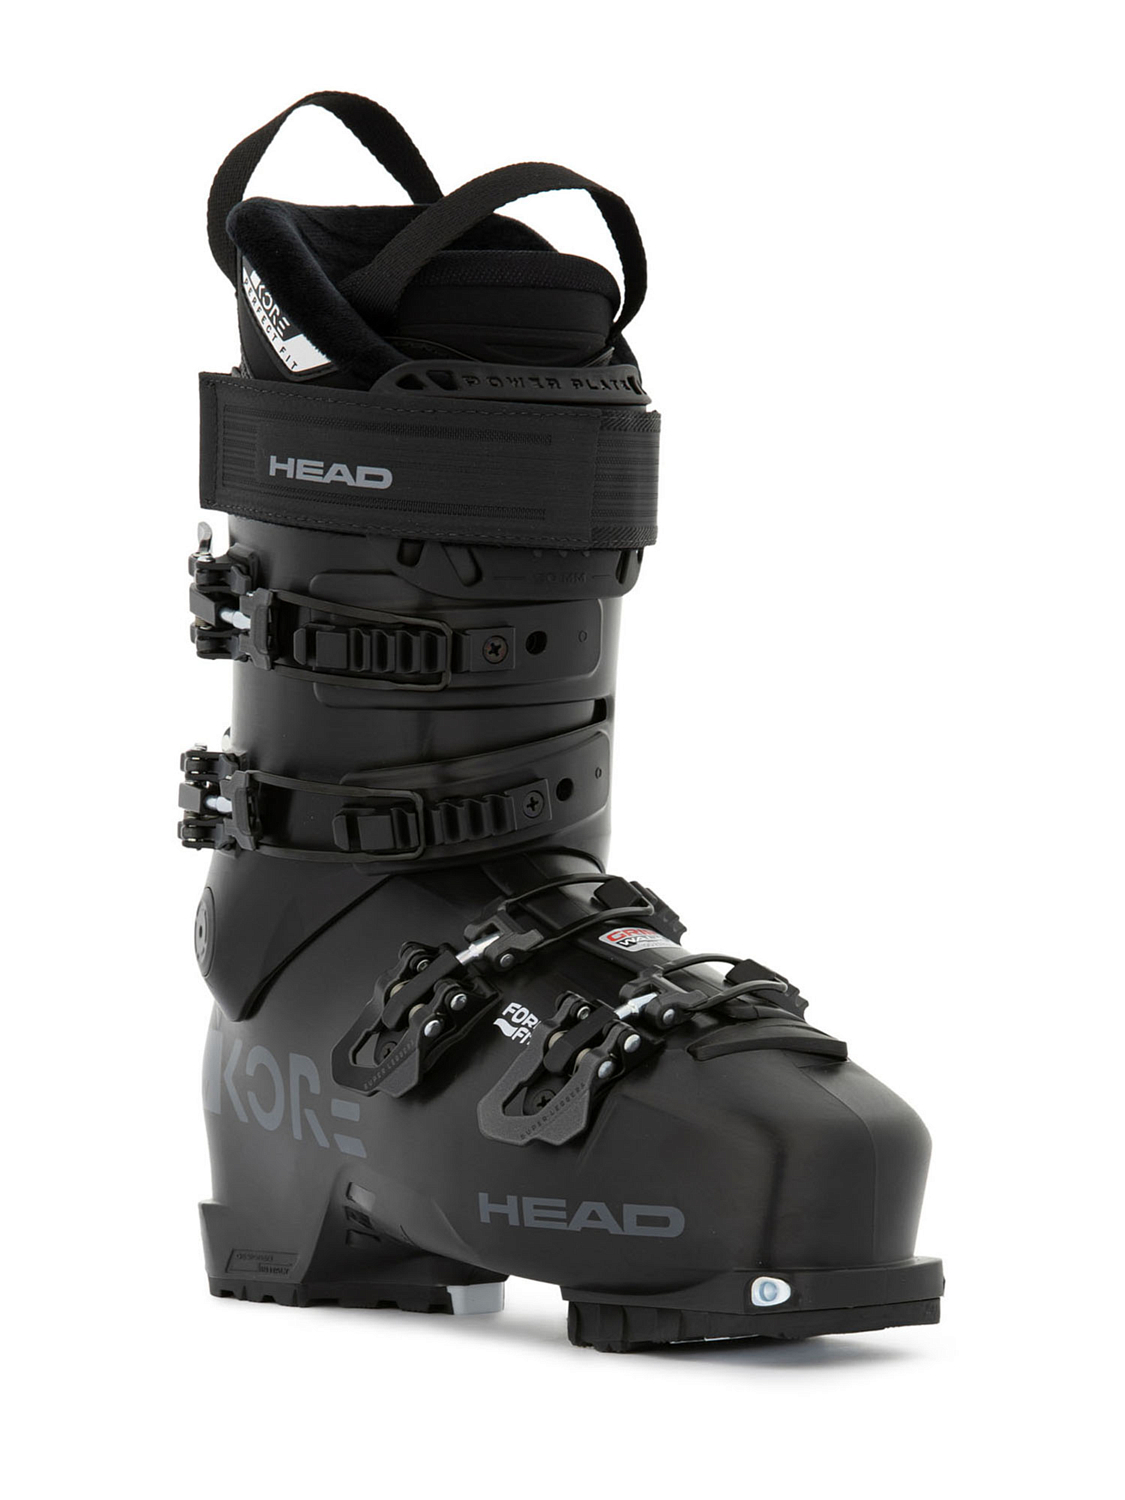 Горнолыжные ботинки HEAD Kore 95 W Gw Black